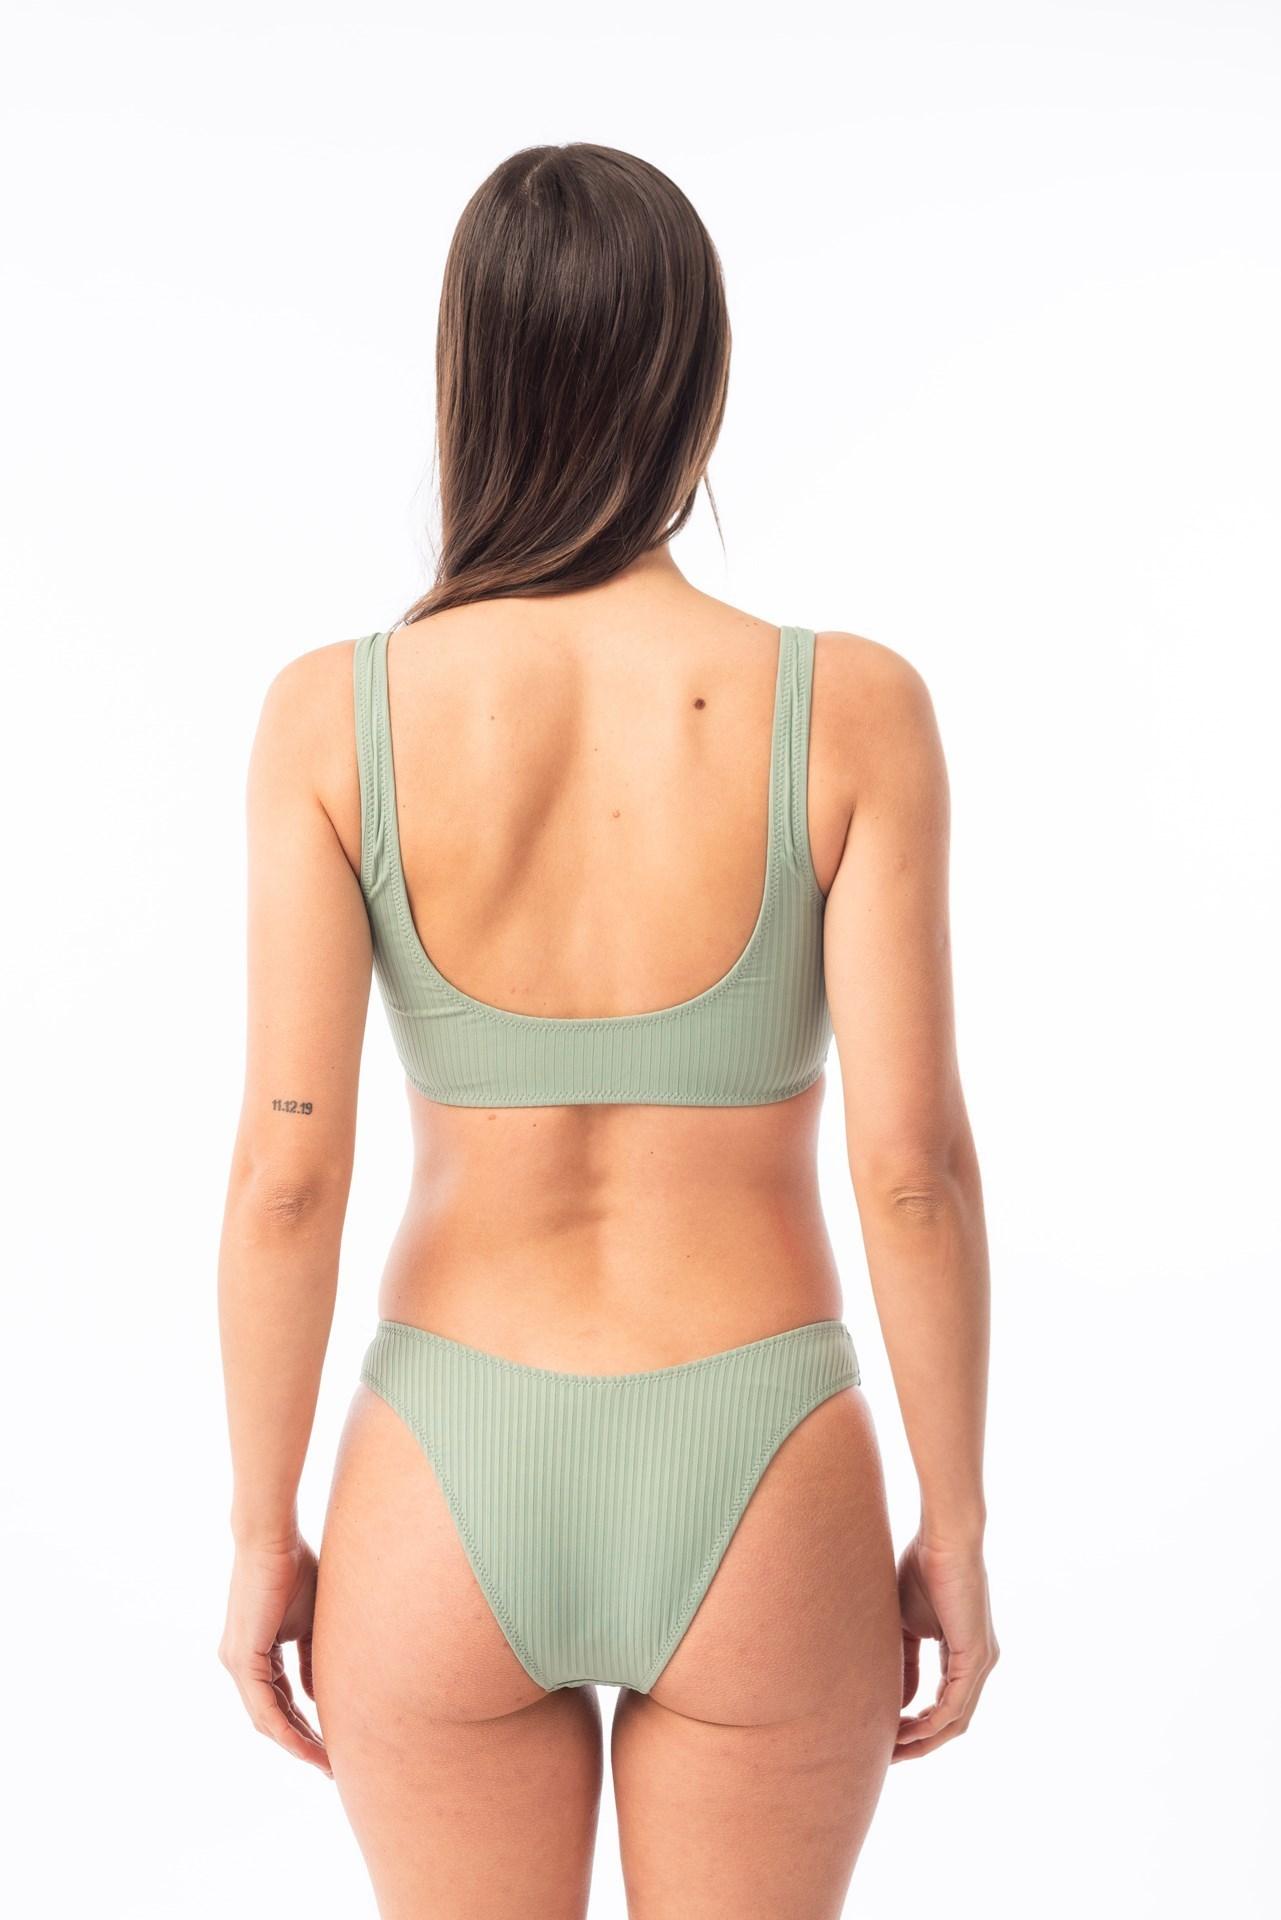 Paraiso- Bikini Top con Argollas verde agua xl